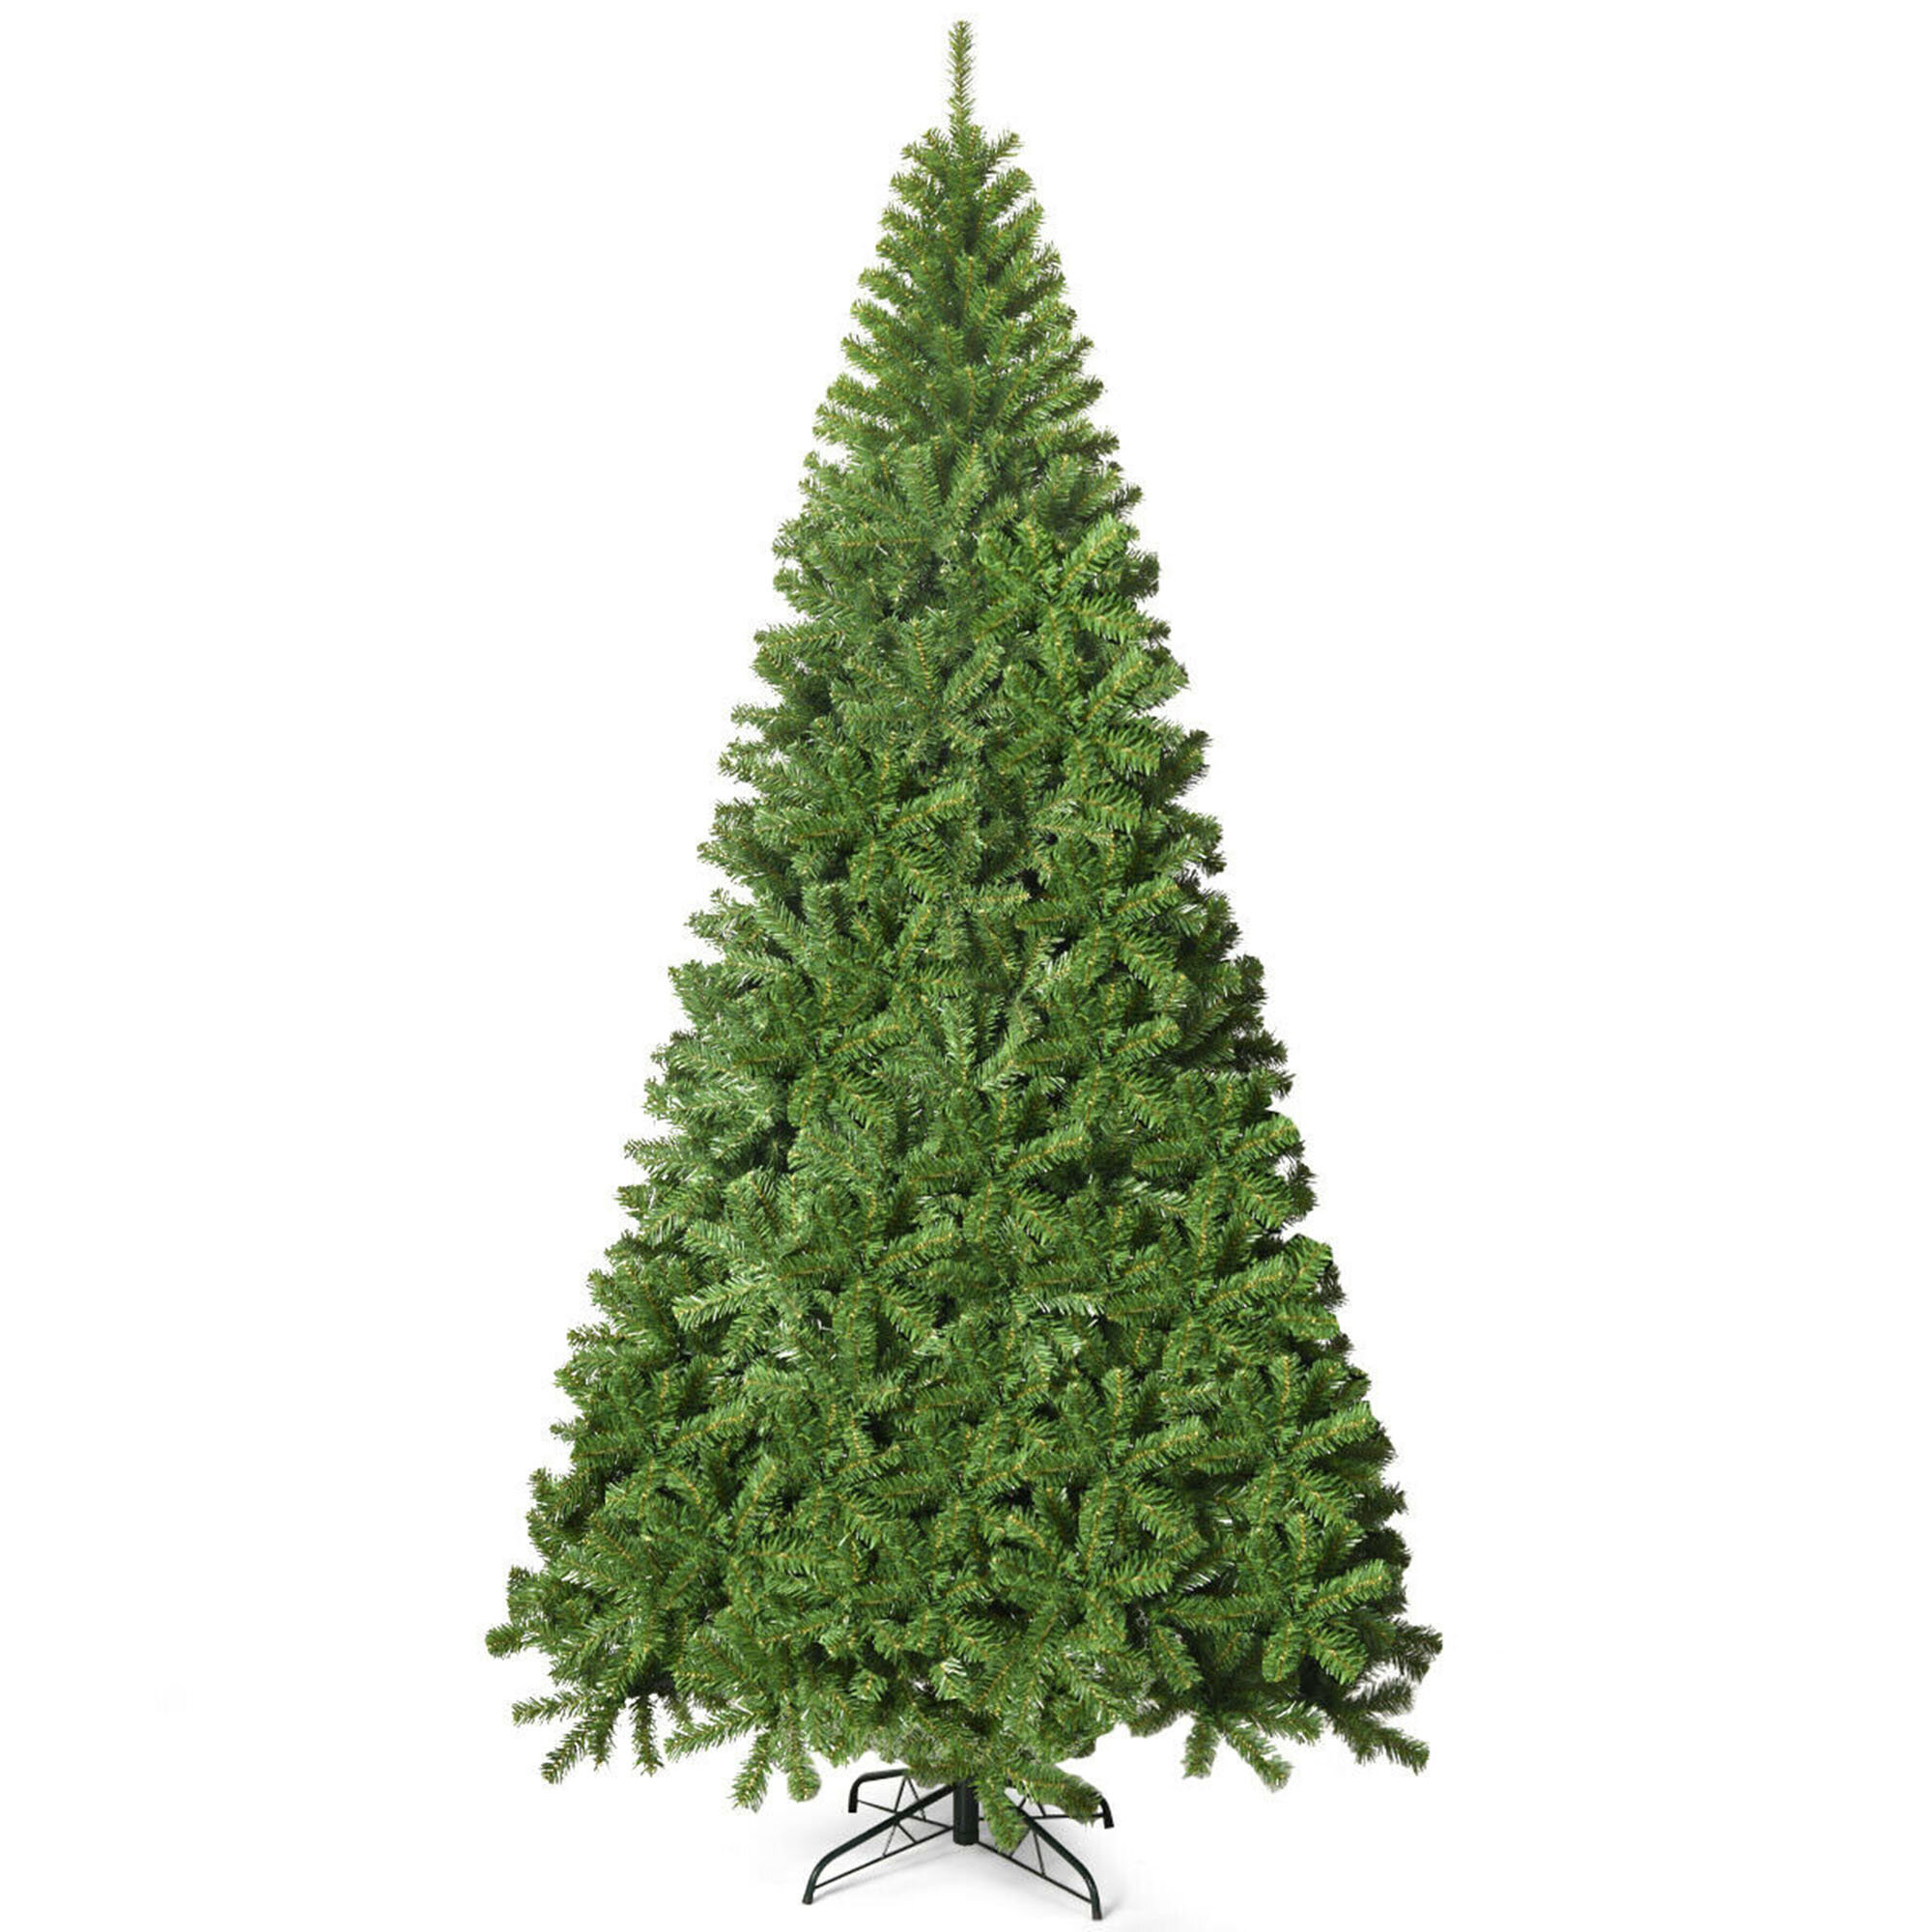 The Holiday Aisle® Pine Christmas Tree | Wayfair